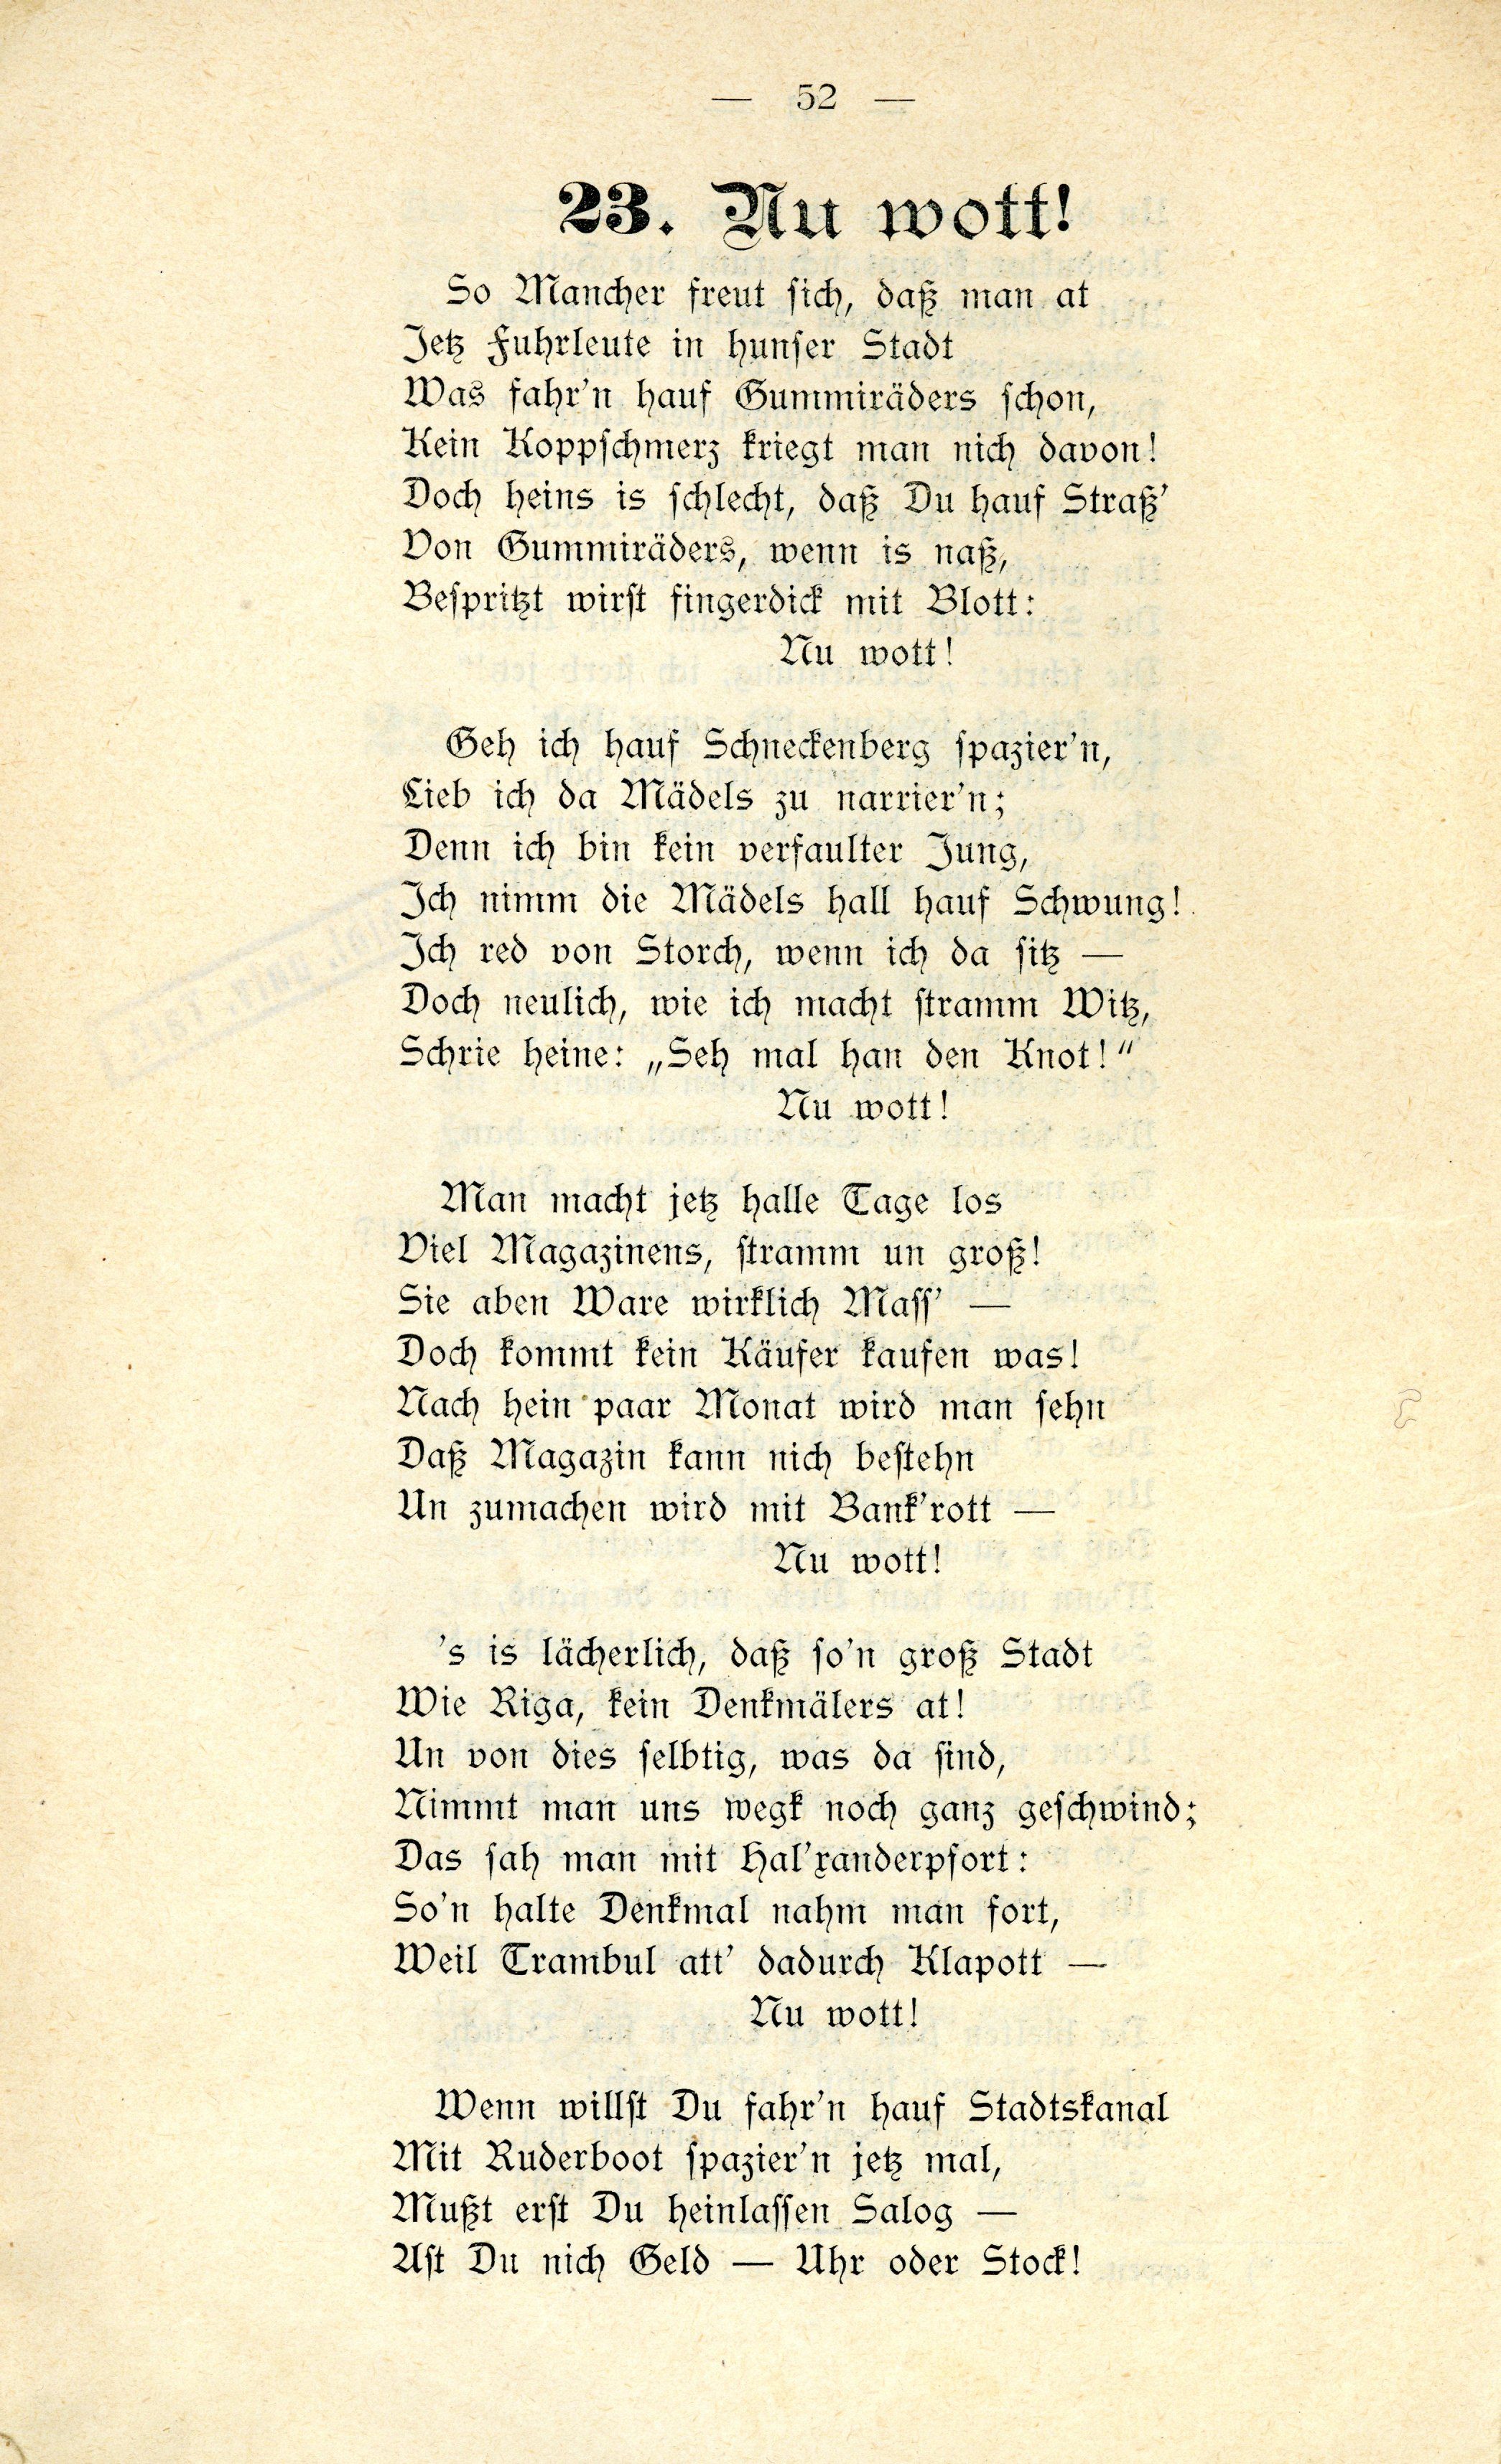 Schanno von Dünakant (1903) | 53. (52) Main body of text